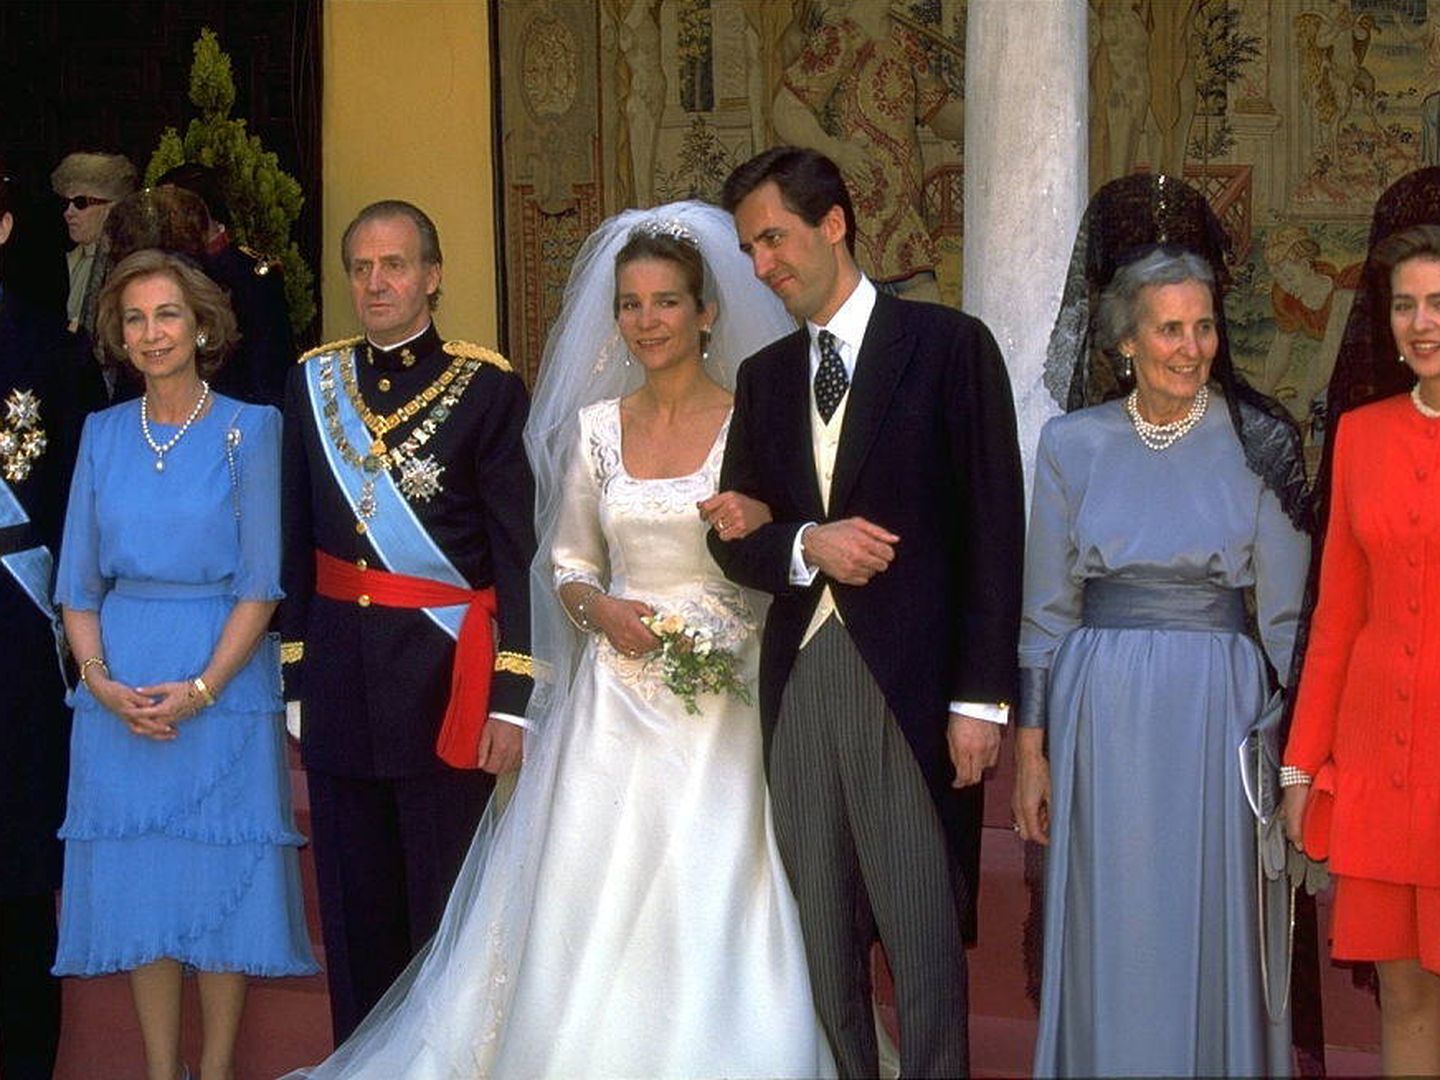 La boda de la infanta Elena y Jaime de Marichalar, en 1995. (Getty)